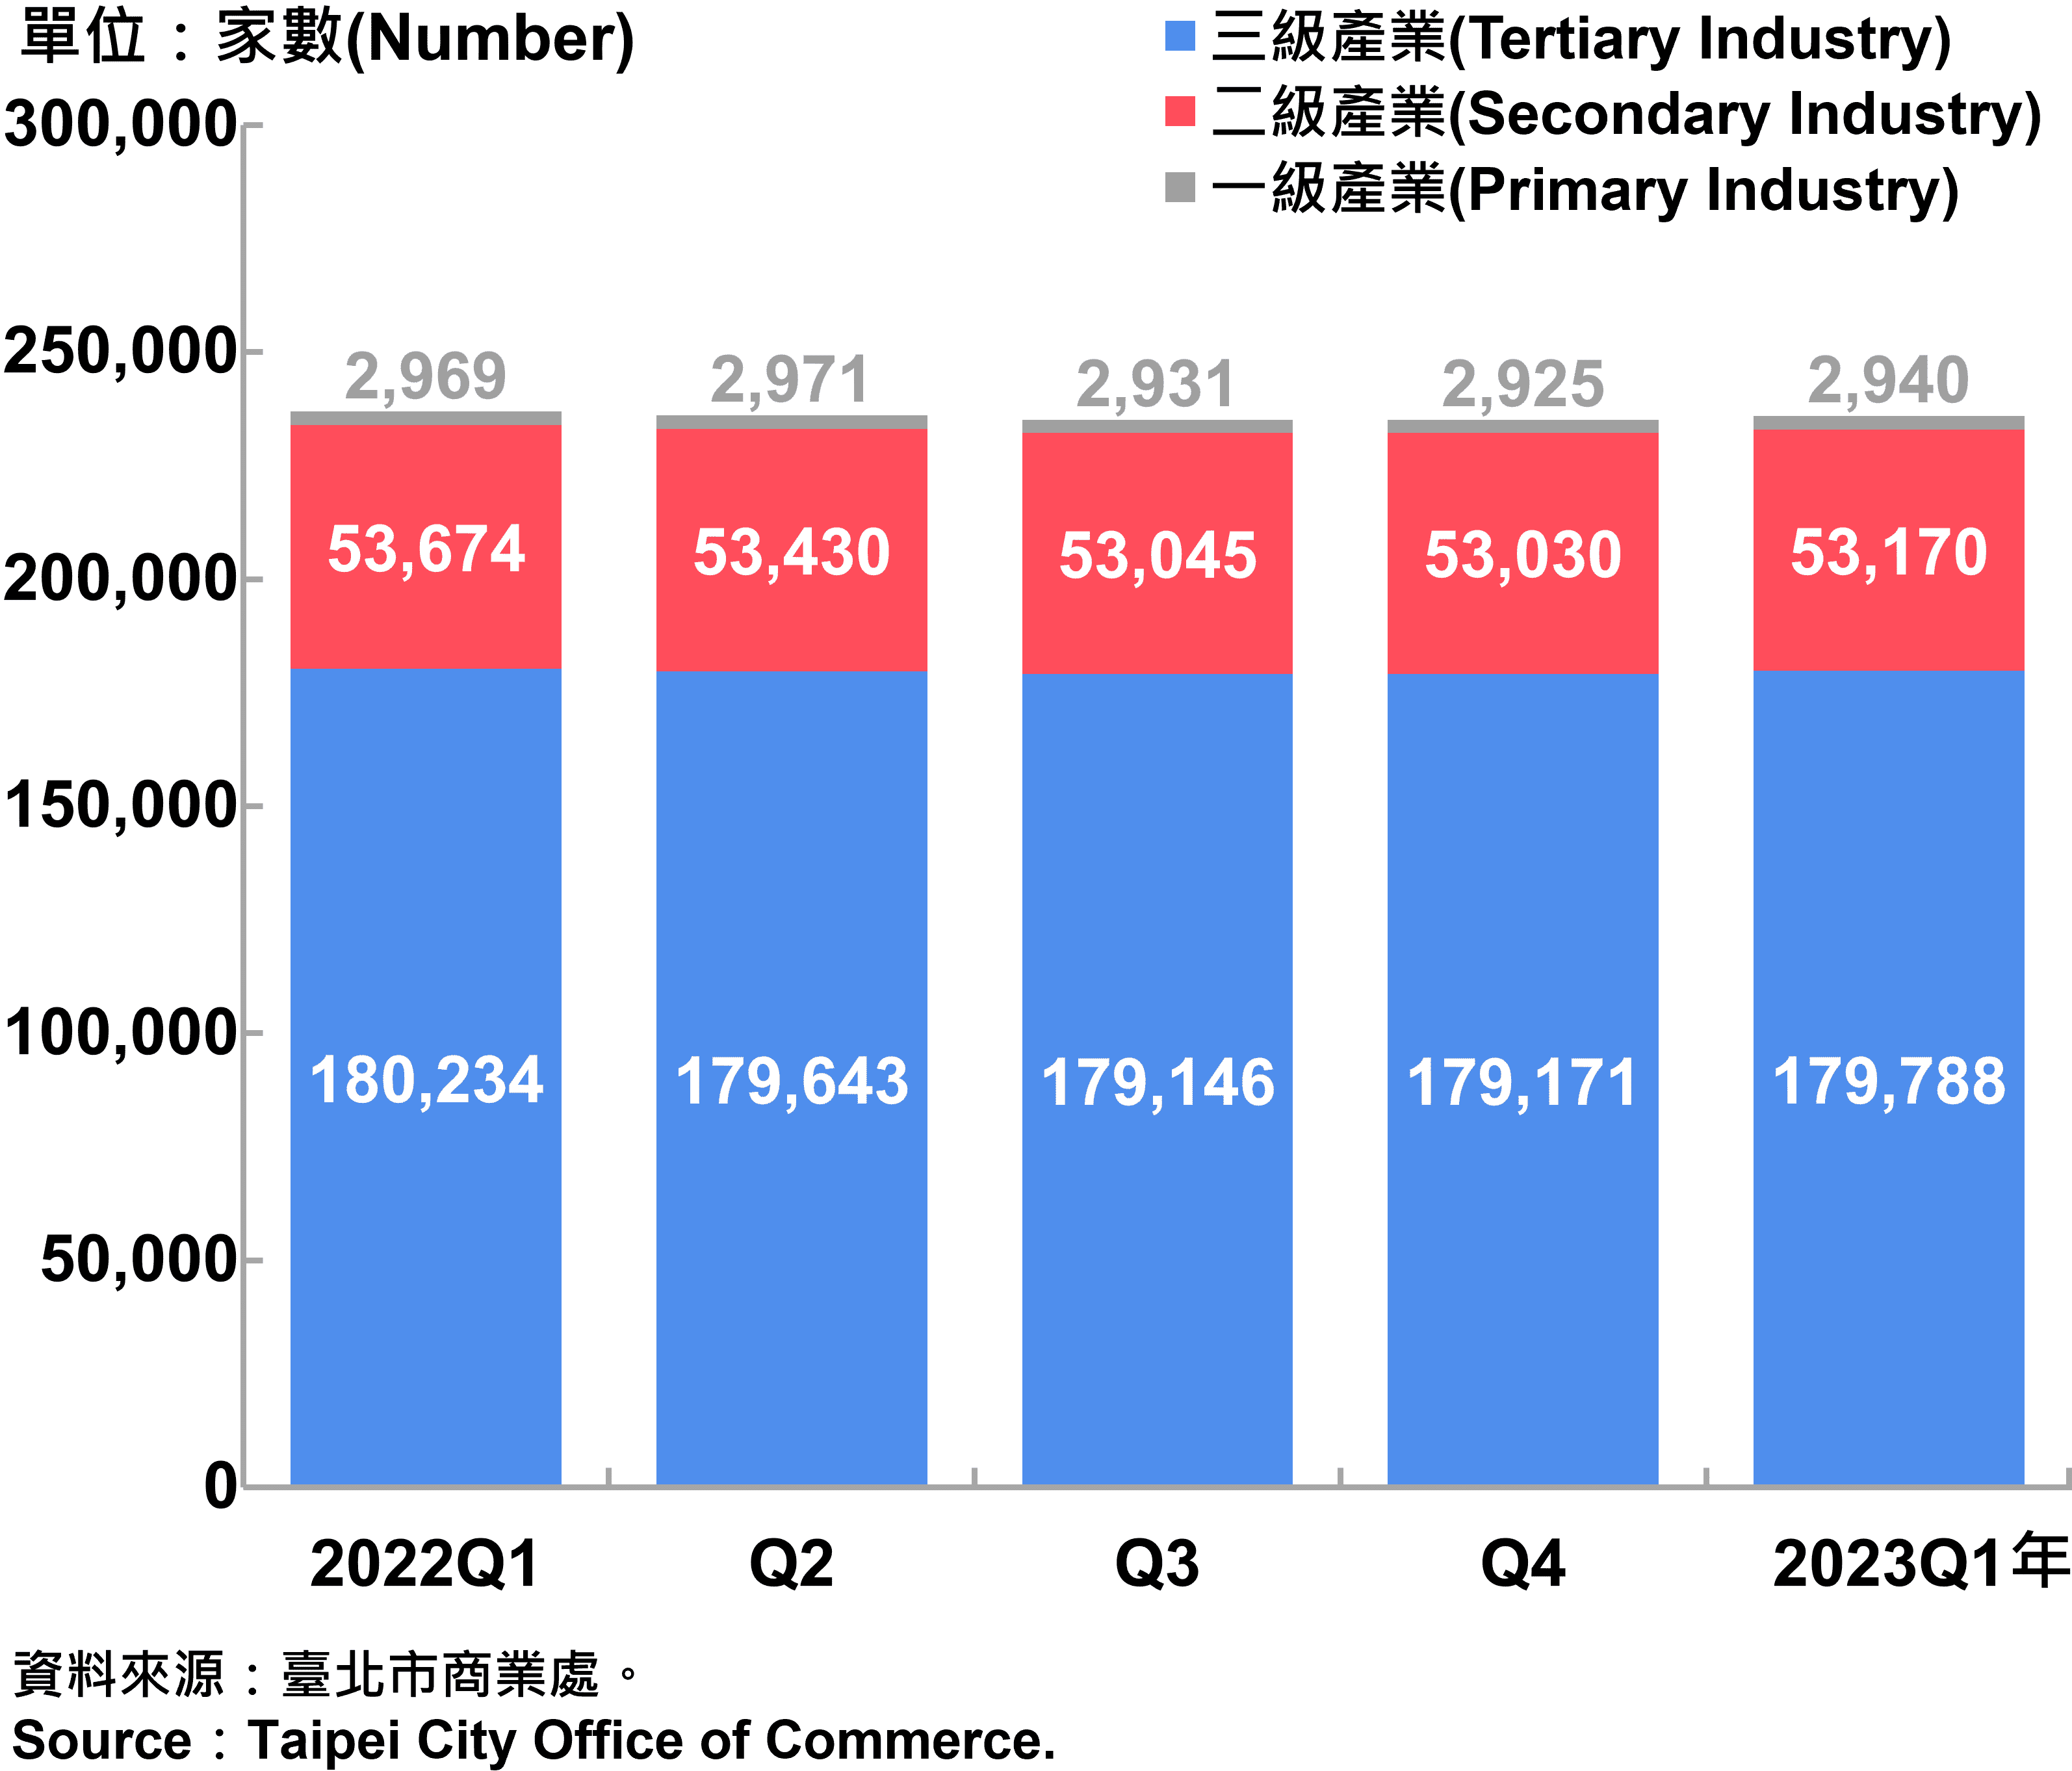 臺北市一二三級產業登記家數—2023Q1 Number of Primary , Secondary and Tertiary Industry in Taipei City—2023Q1